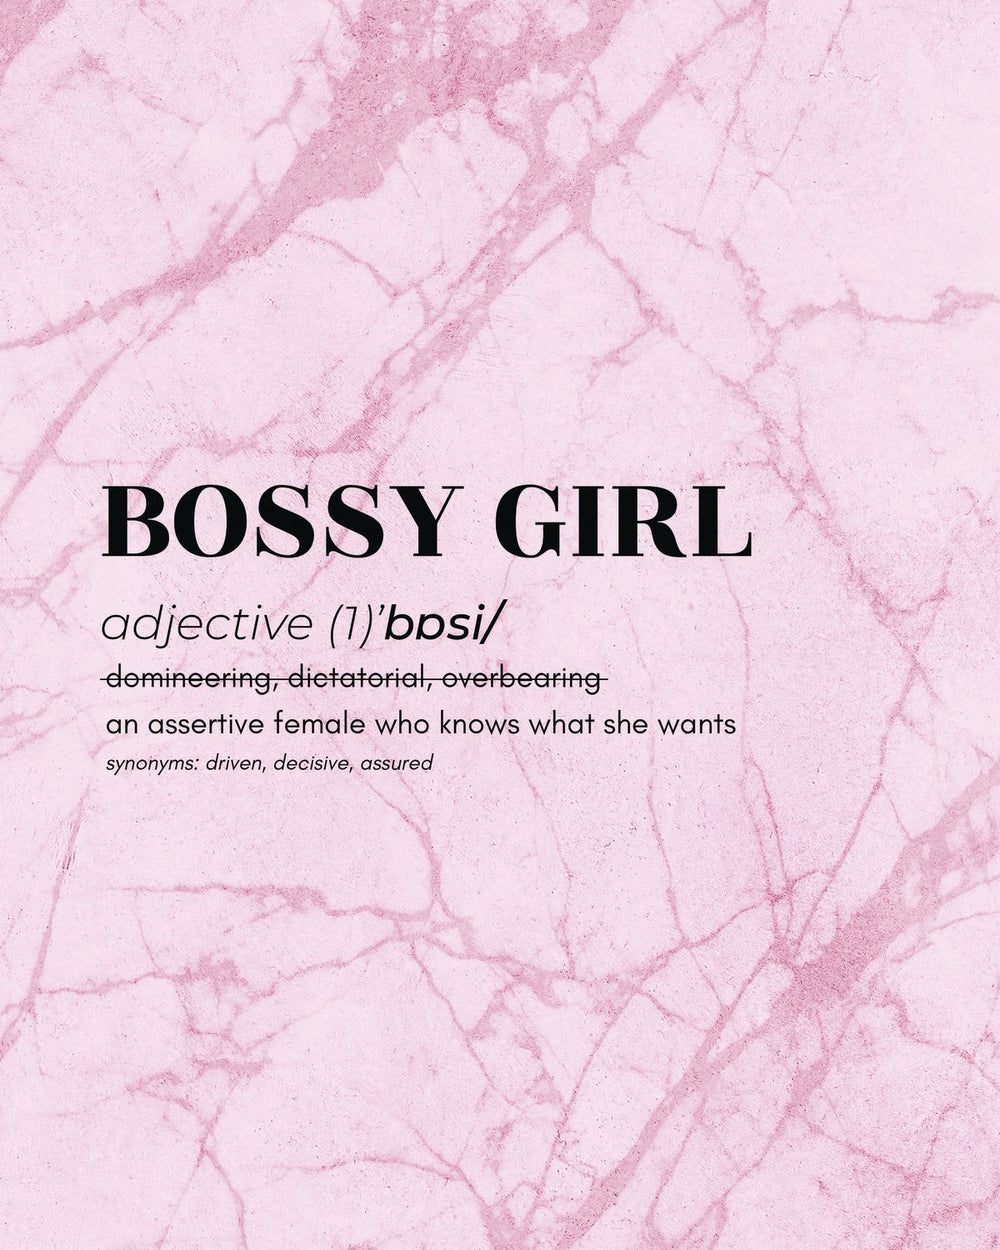 Bossy Girl Definition